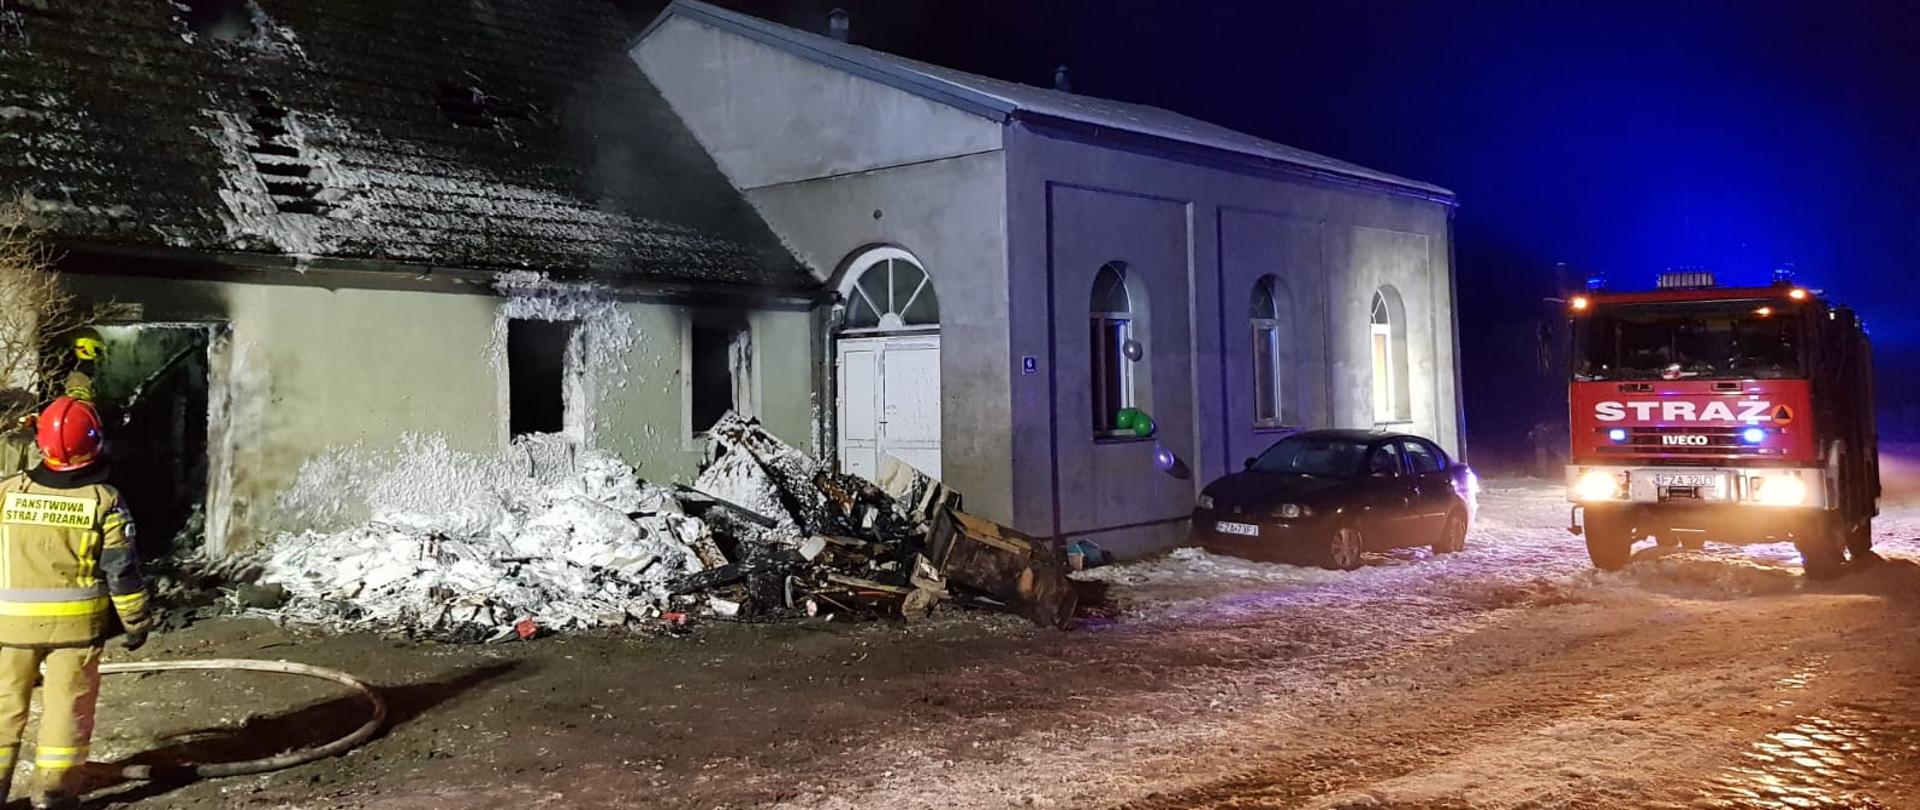 Pożar budynku mieszkalnego jednorodzinnego w miejscowości Chocimek. Strażacy dogaszają i usuwają spalone elementy wyposażenia budynku. 